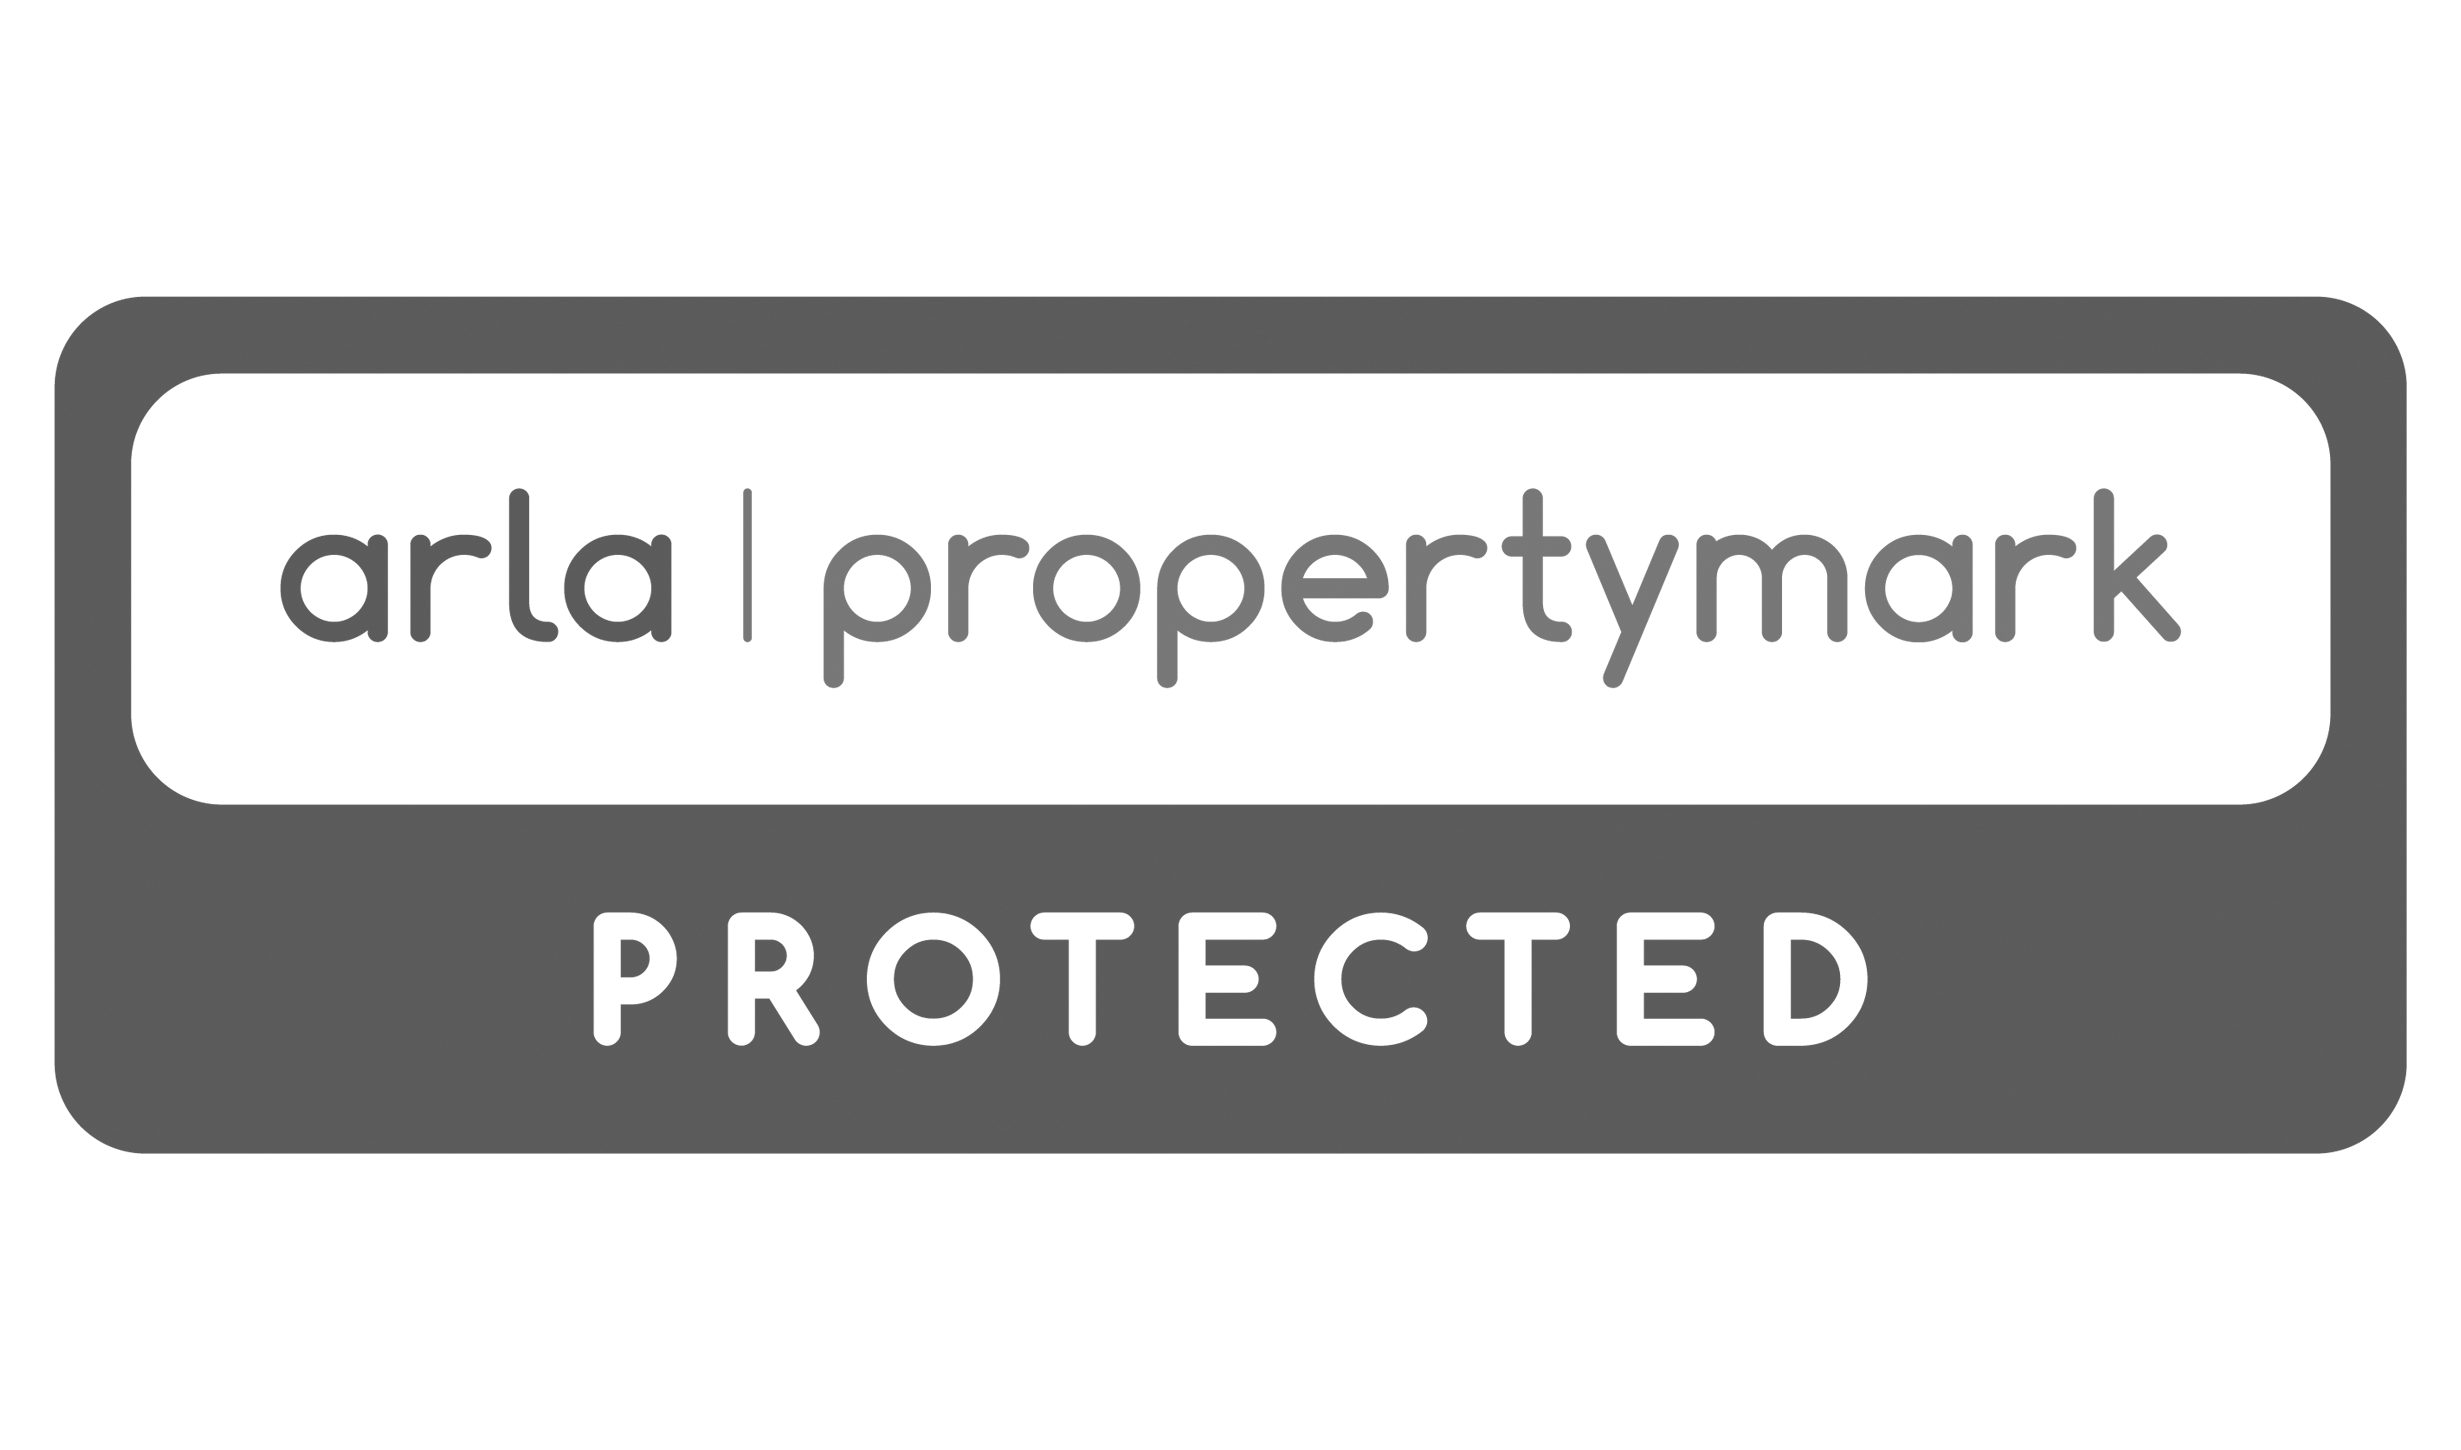 ARLA-Propertymark-Protected-Greyscale